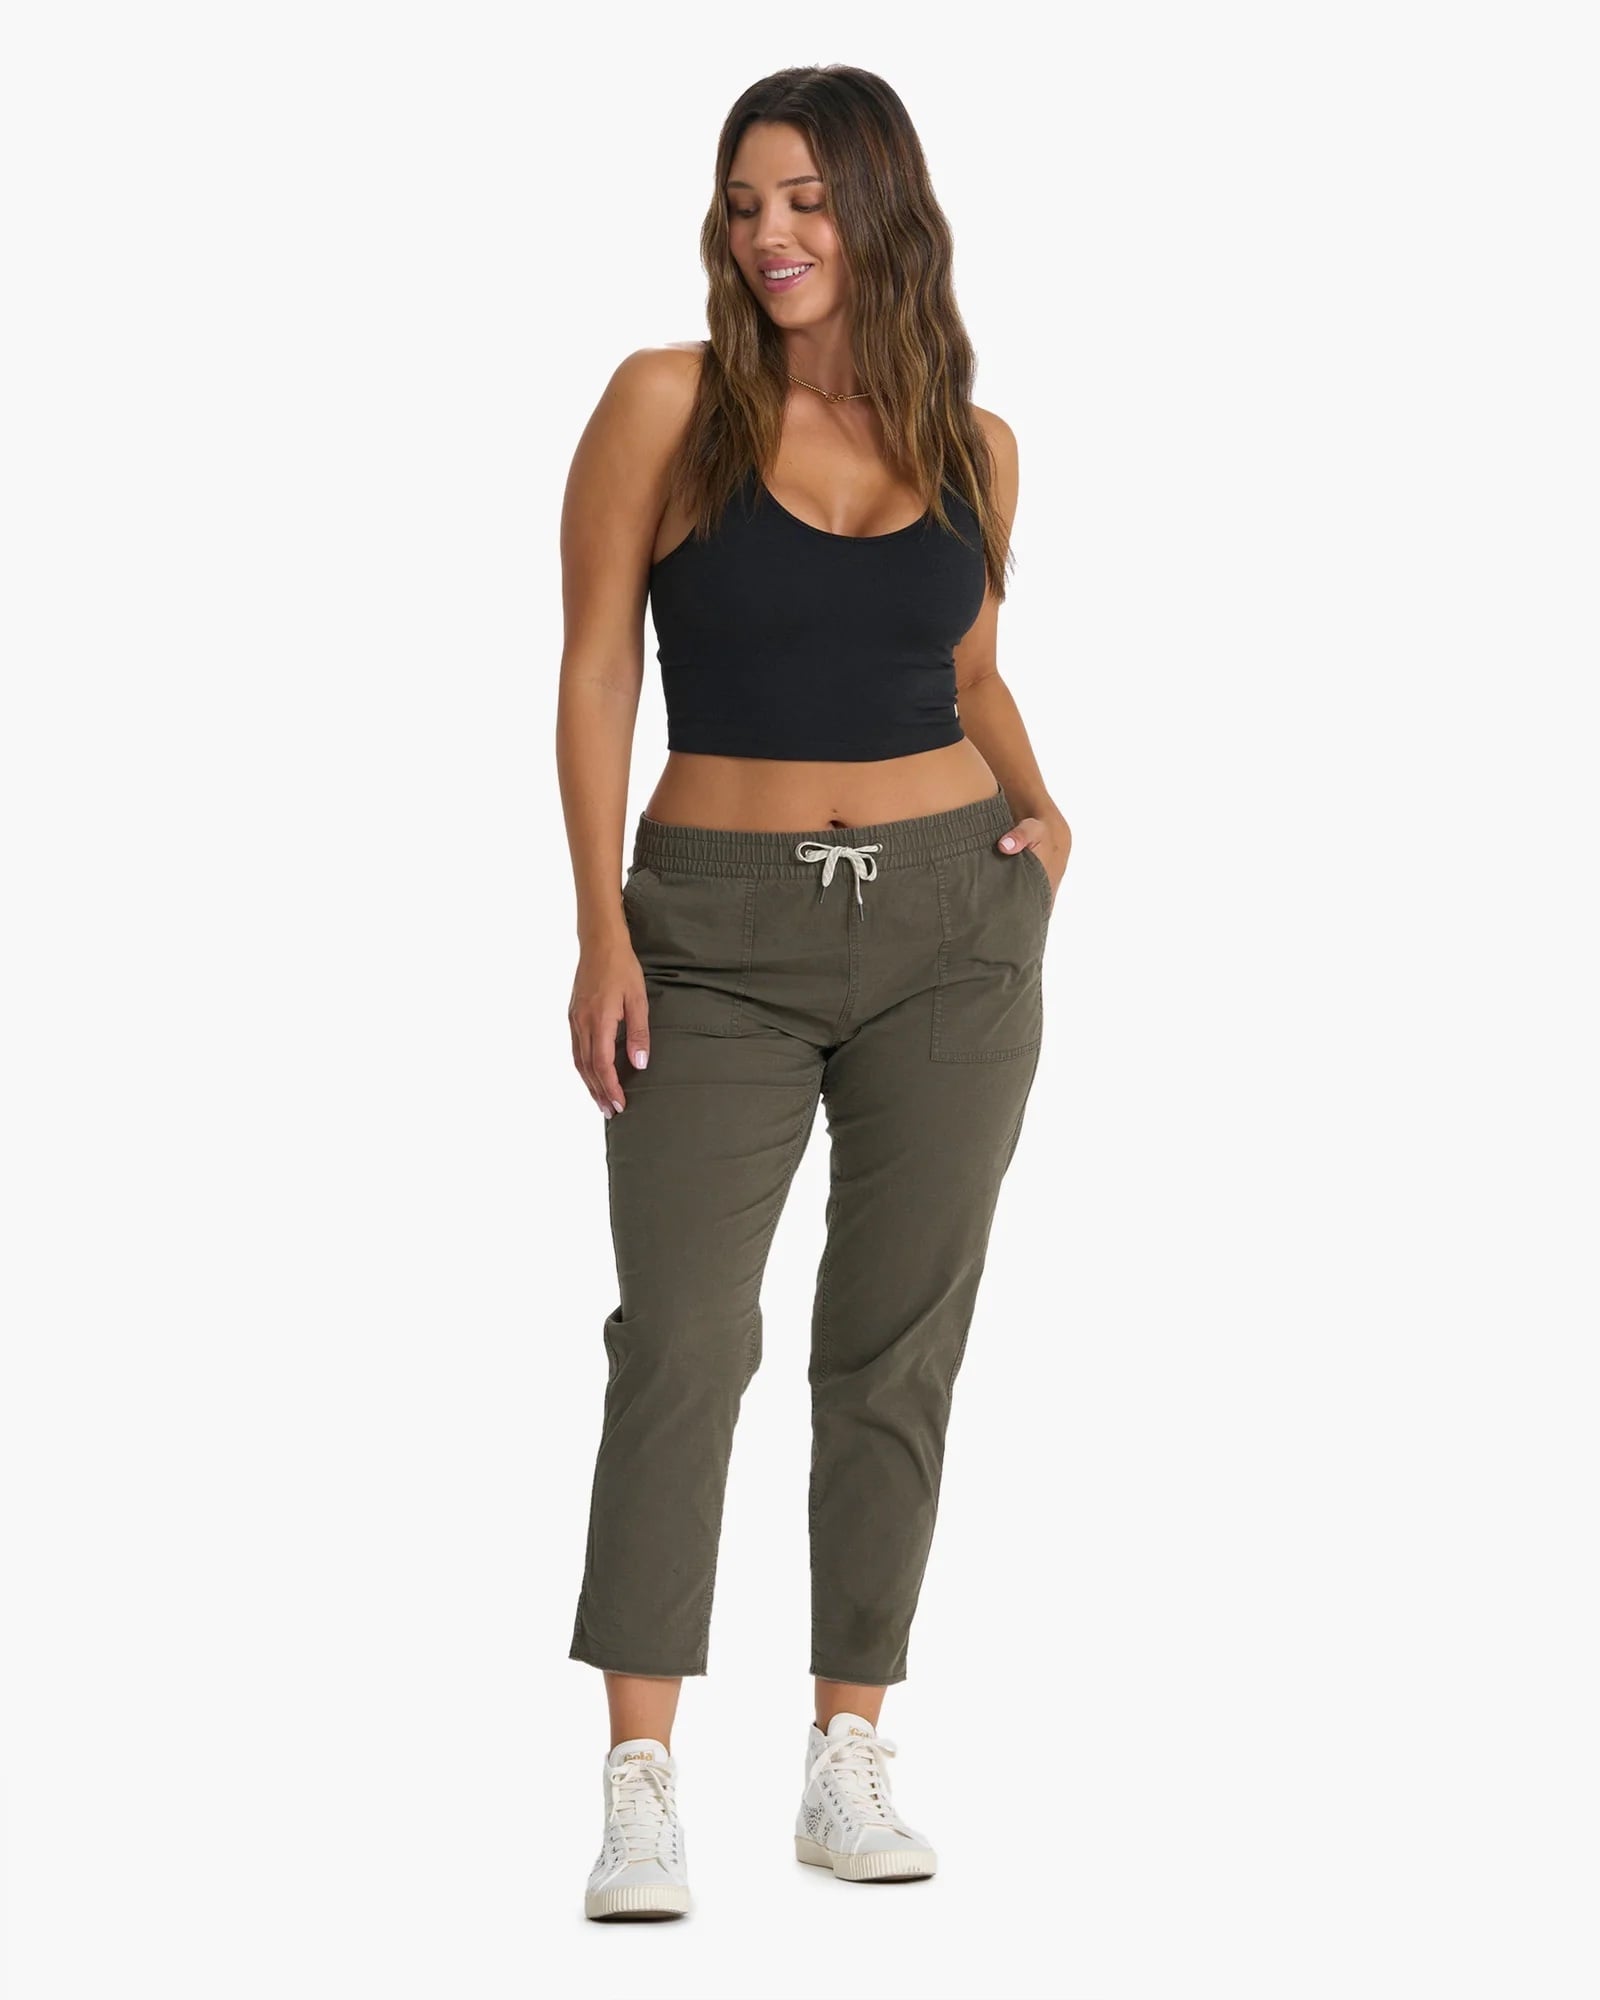 48 Pieces Fur Lined Jogger Pants Size L/ xl - Womens Active Wear